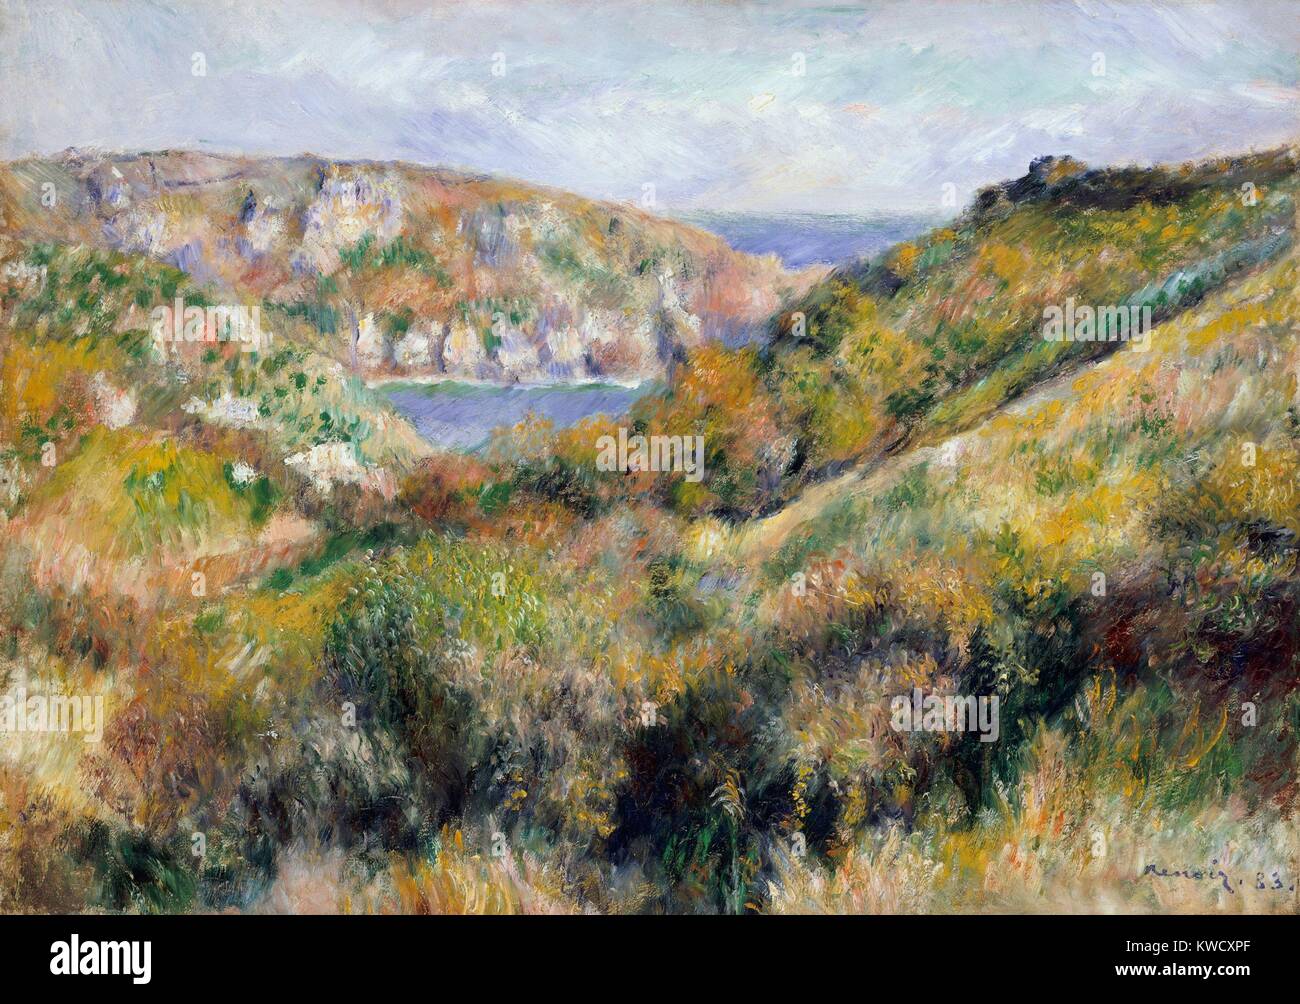 Les collines autour de la baie de Moulin Huet, Guernesey, par Auguste Renoir, 1883, la peinture impressionniste français. Renoir a peint des vues sur la baie et la plage de Moulin Huet, sur les îles de la côte du sud au cours de sa visite de l'été 1883 (BSLOC 2017 3 89) Banque D'Images